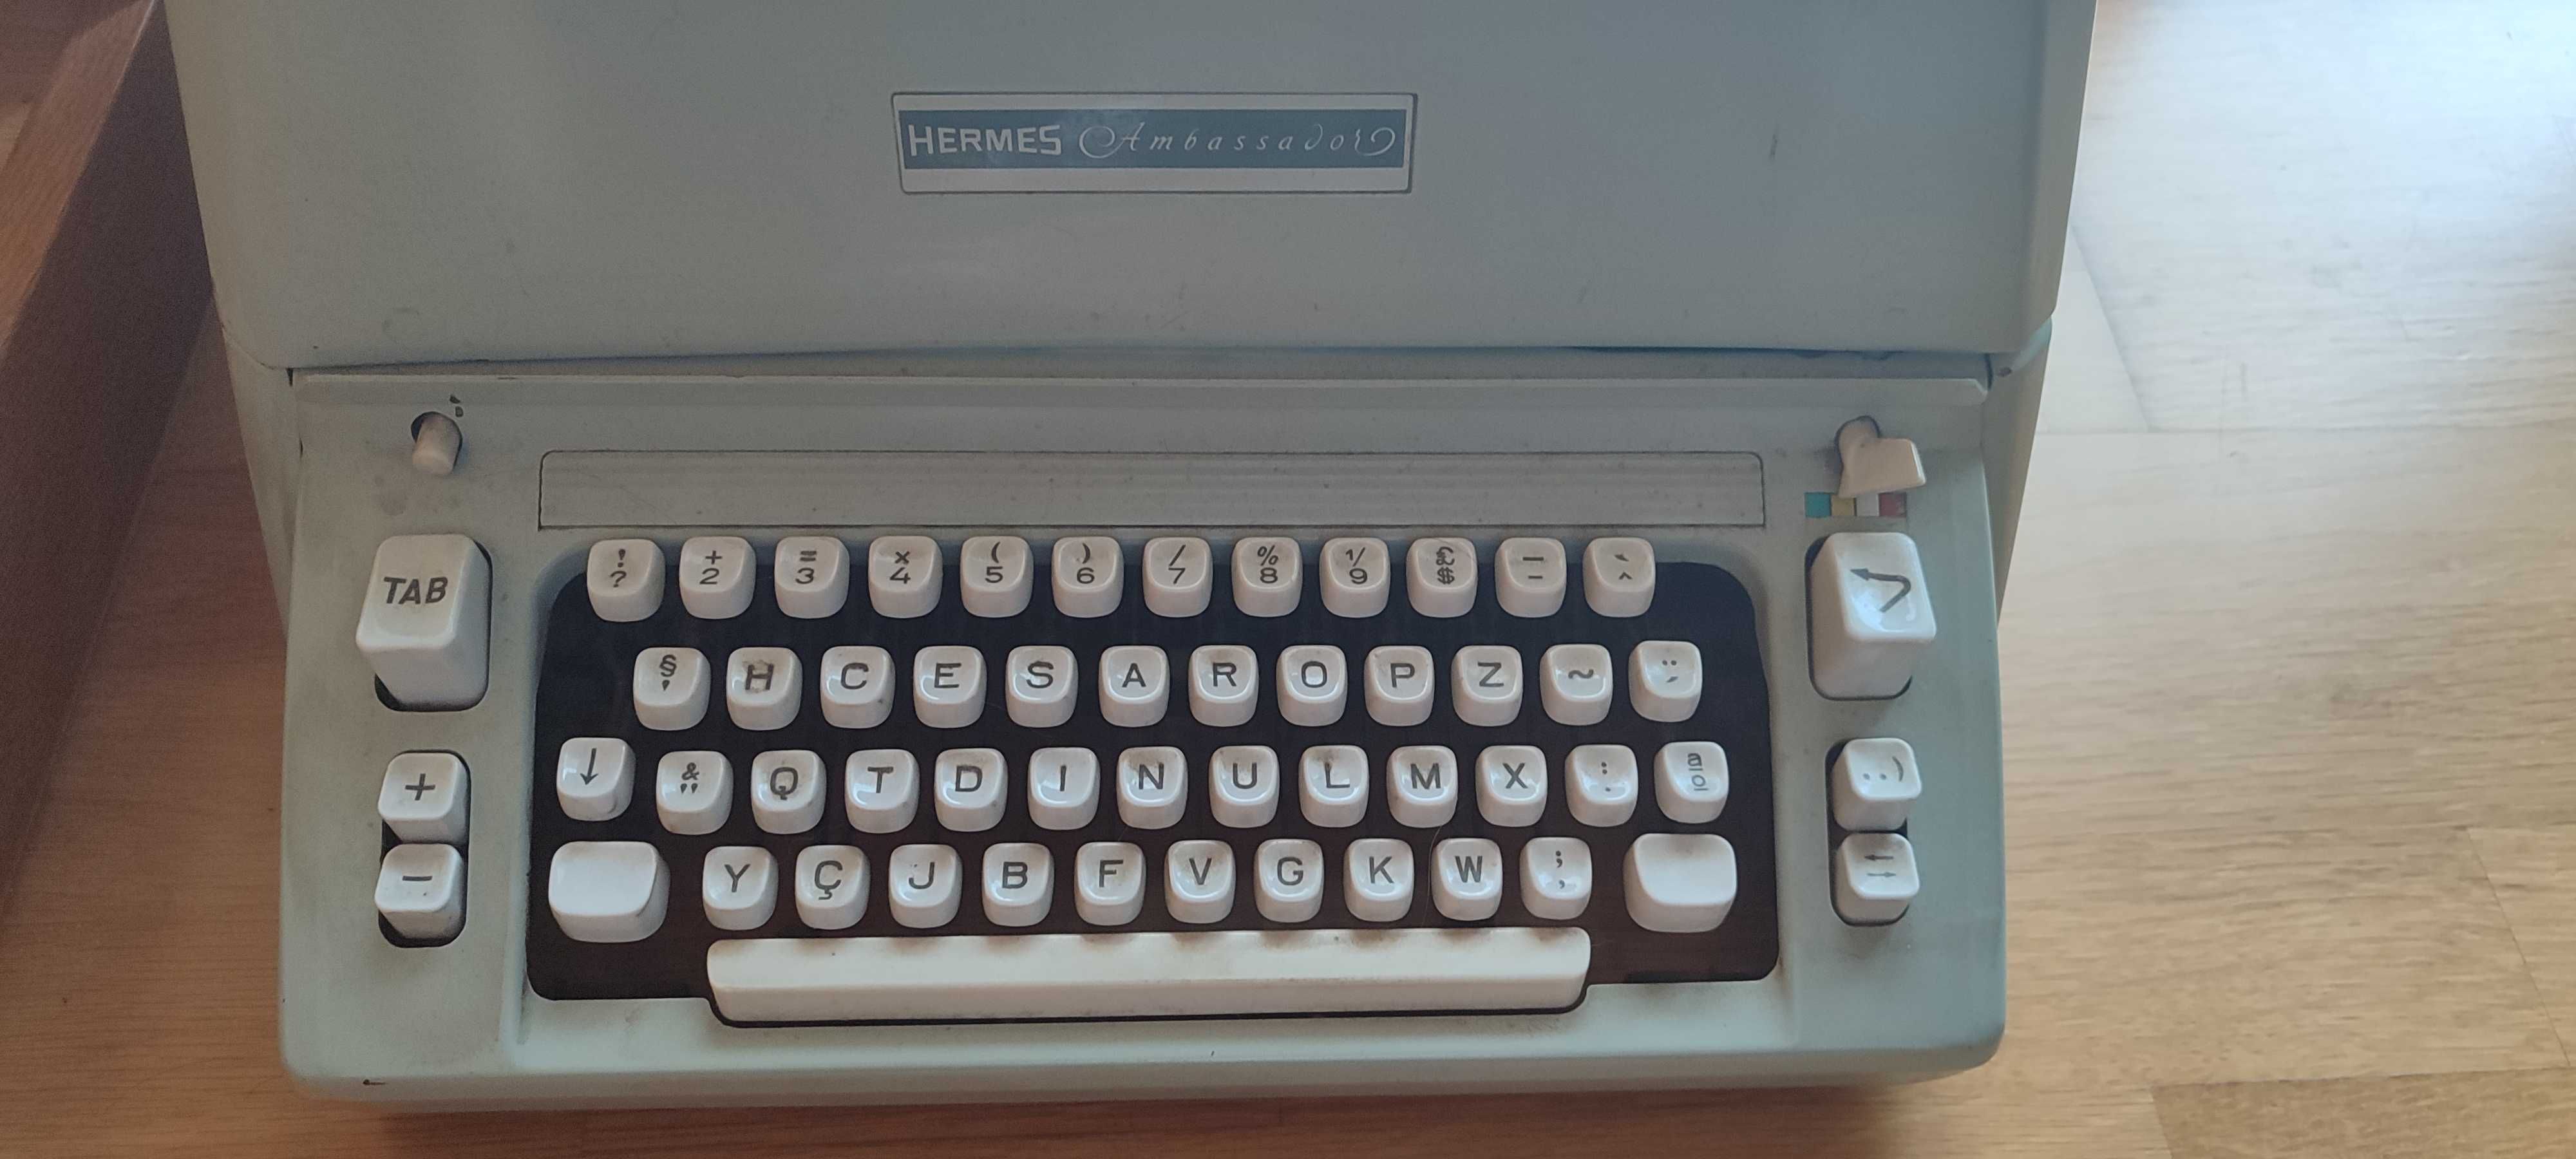 Máquina escrever vintage